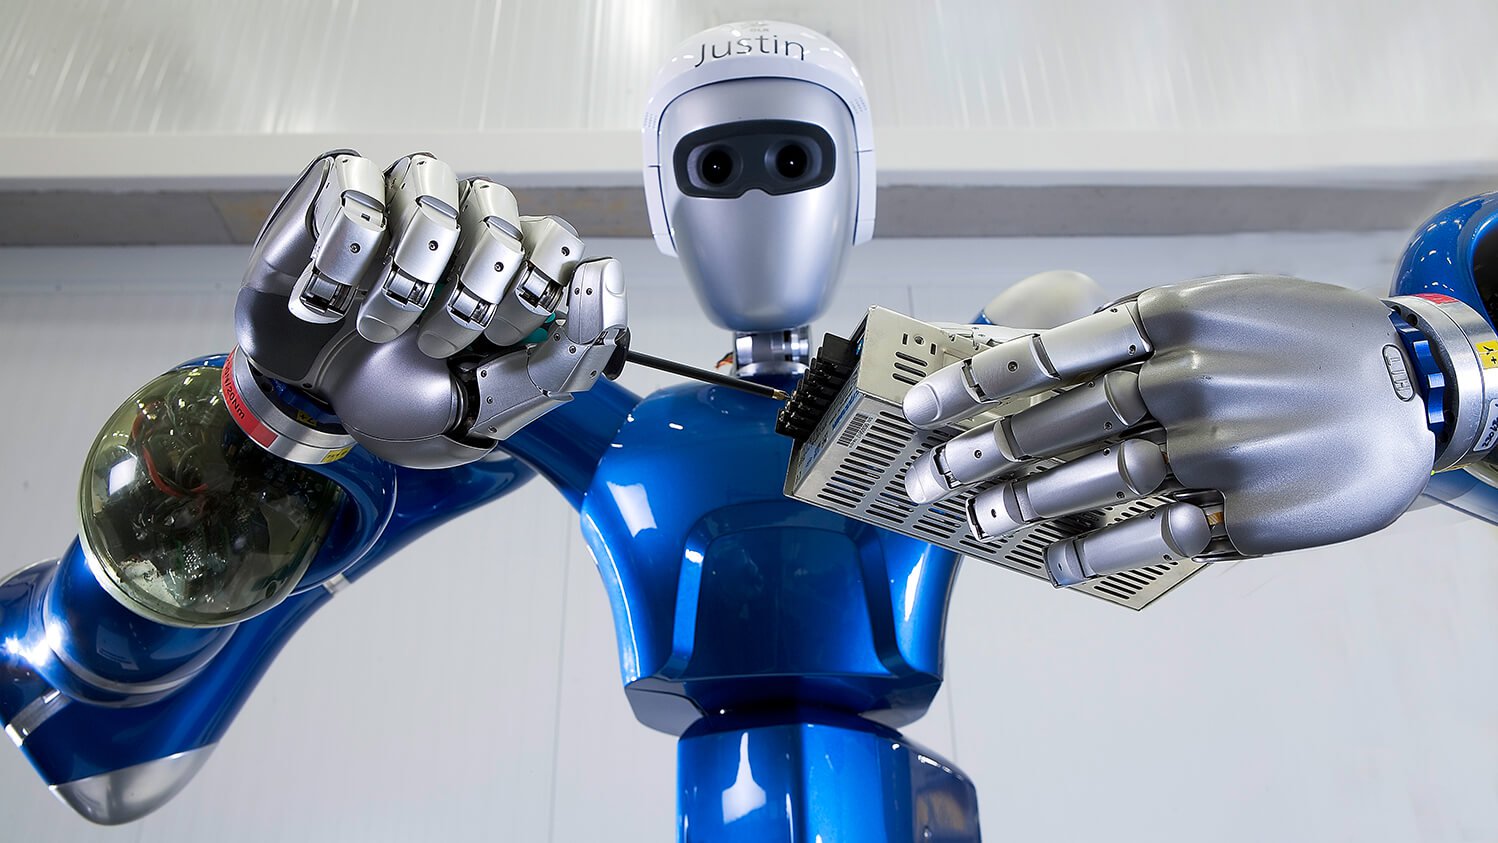 O que é антропоморфный robô e por que sua popularidade está crescendo?